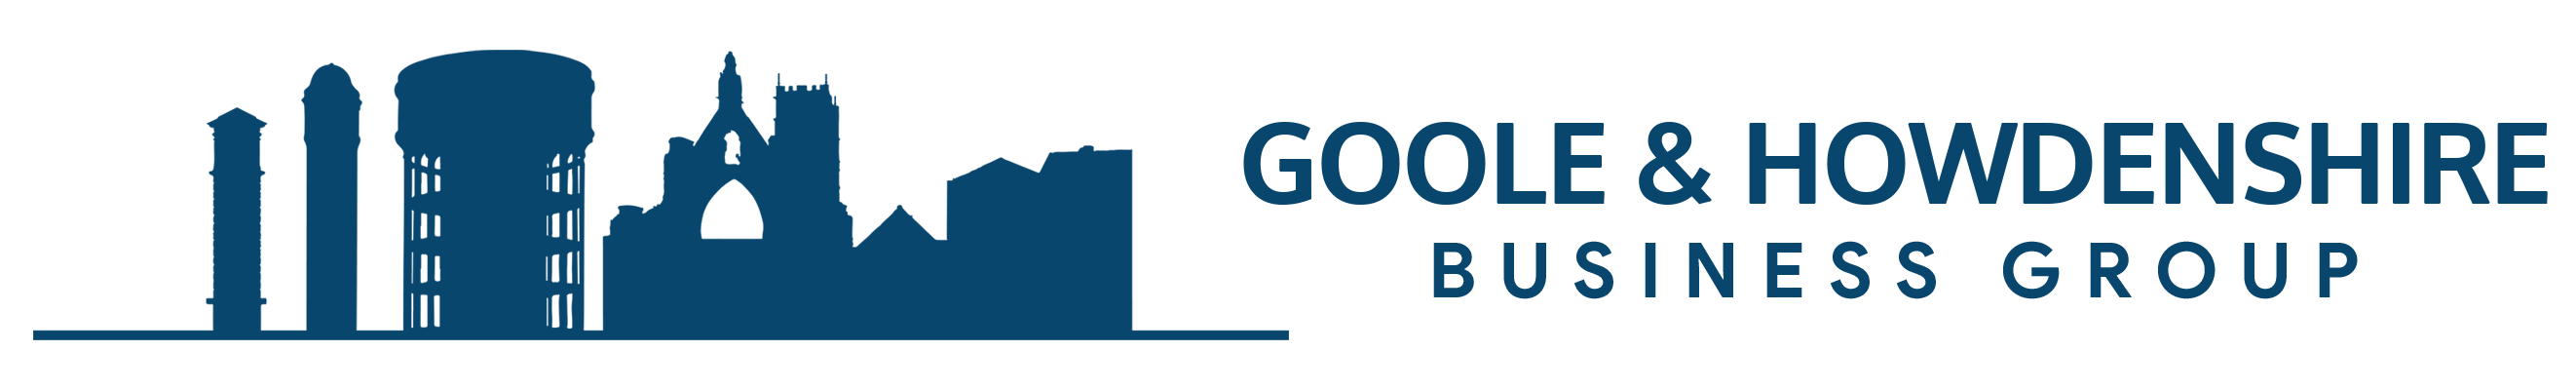 horizontal-ghbg-logo-blue